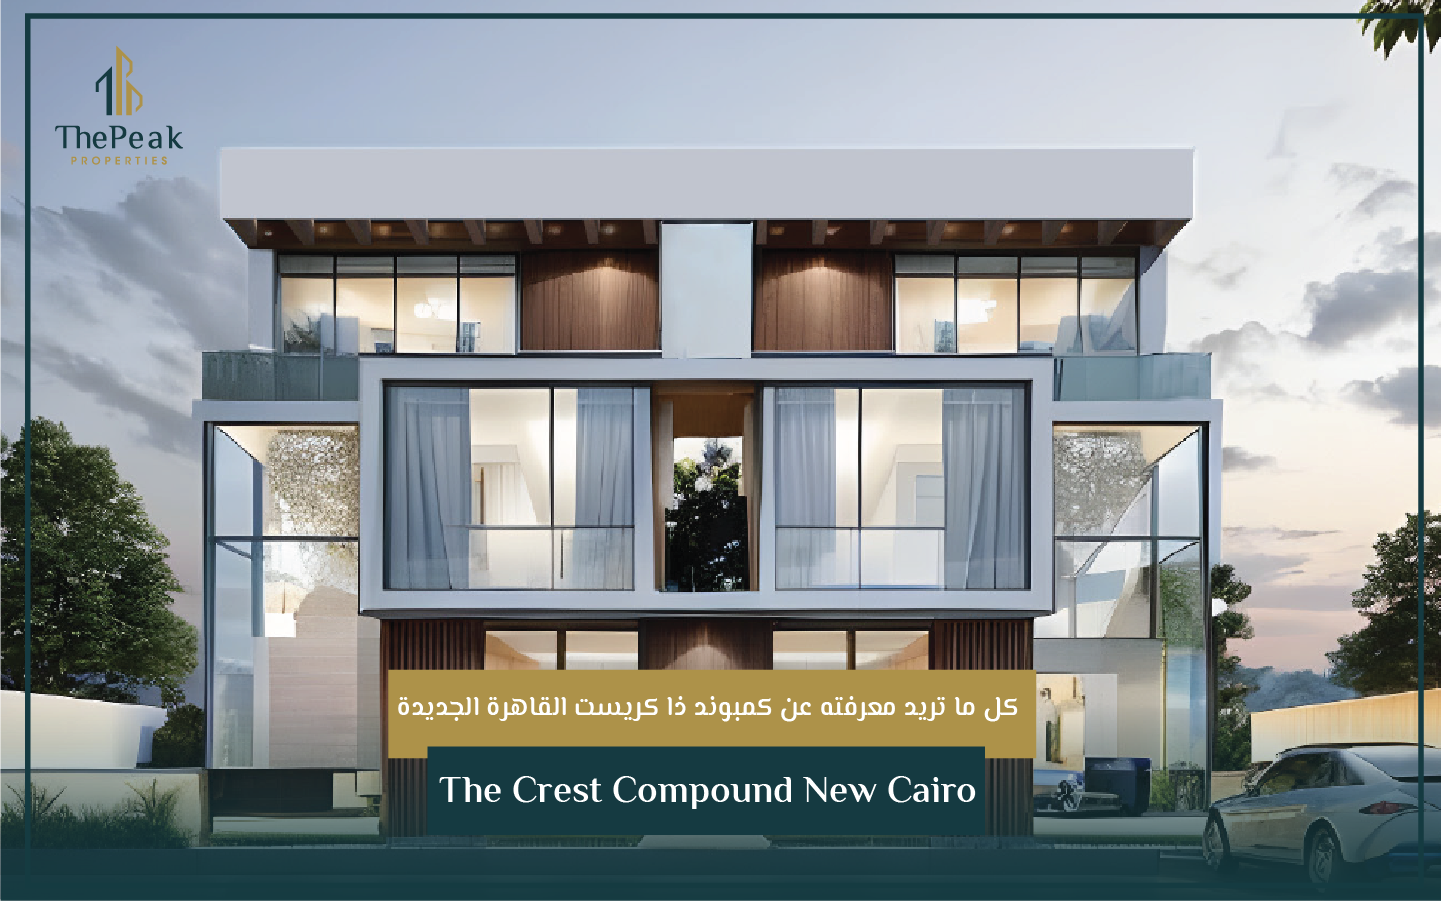 "فيلا للبيع بالتقسيط في التجمع الخامس  مساحة 425 متر  مقدم 5 % و تقسيط يصل إلي 7 سنوات  في مشروع The Crest Compound New Cairo" | THE PEAK PROPERTIES